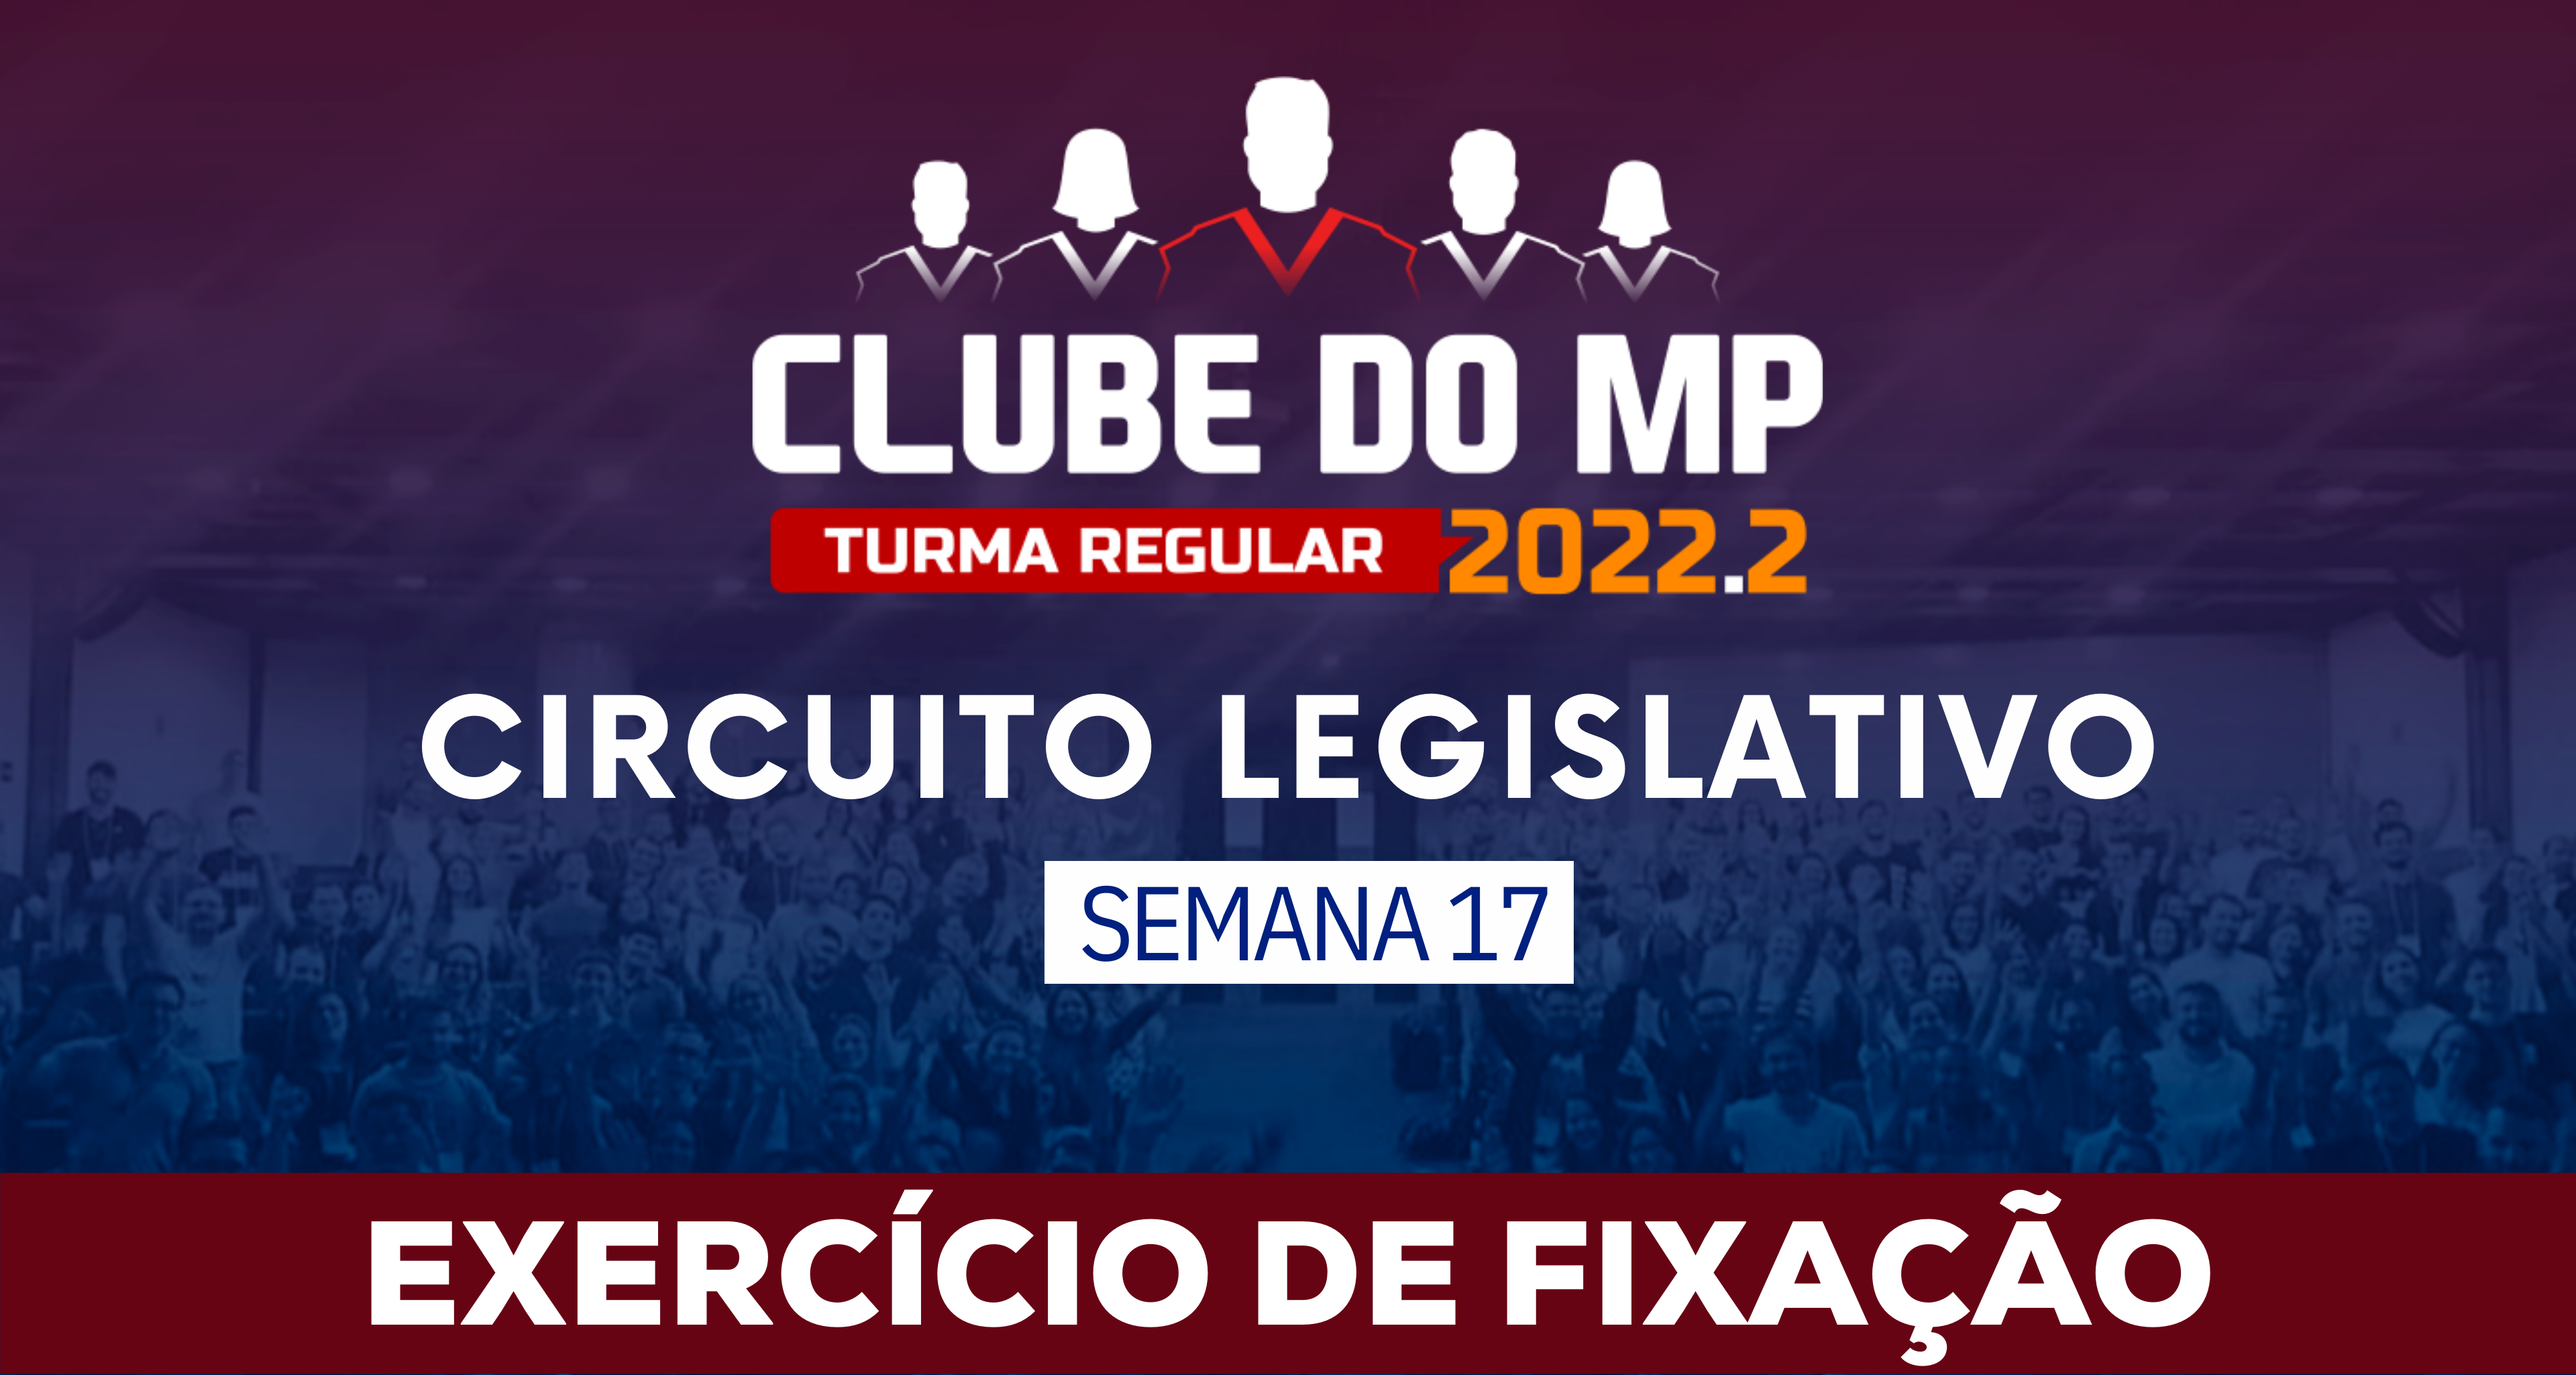 Circuito Legislativo 2022.2 (Clube do MP - Semana 17)